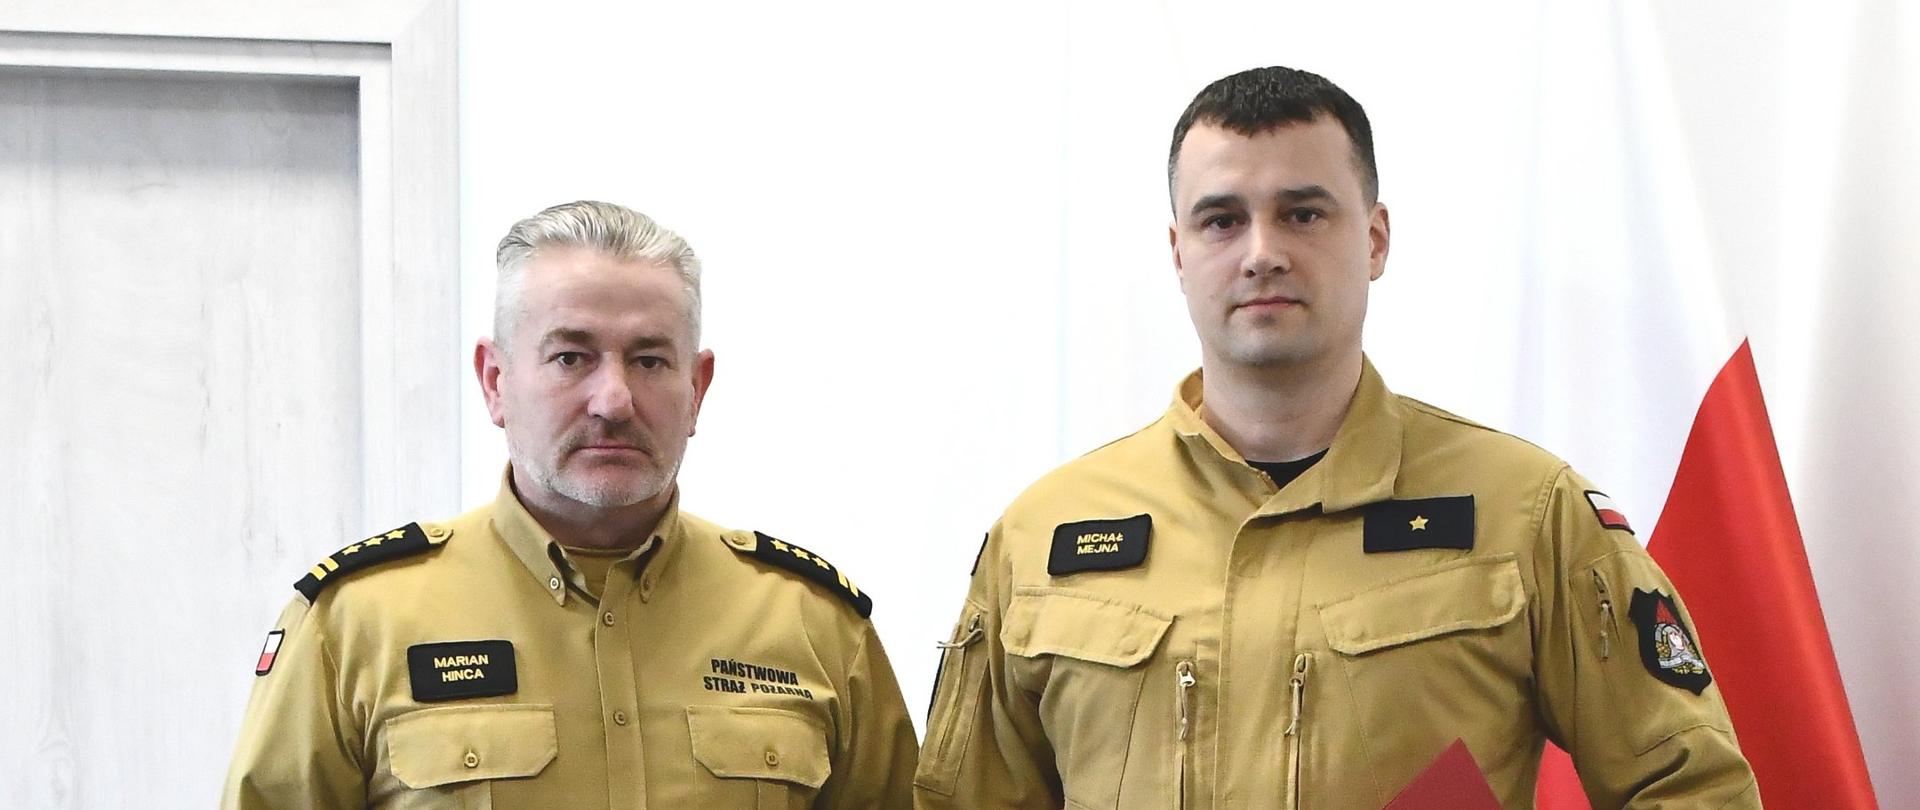 Strażacy w mundurach koloru musztardowego stoją obok siebie jeden z nich trzyma czerwoną teczką za nimi ustawione są dwie flagi Polski.